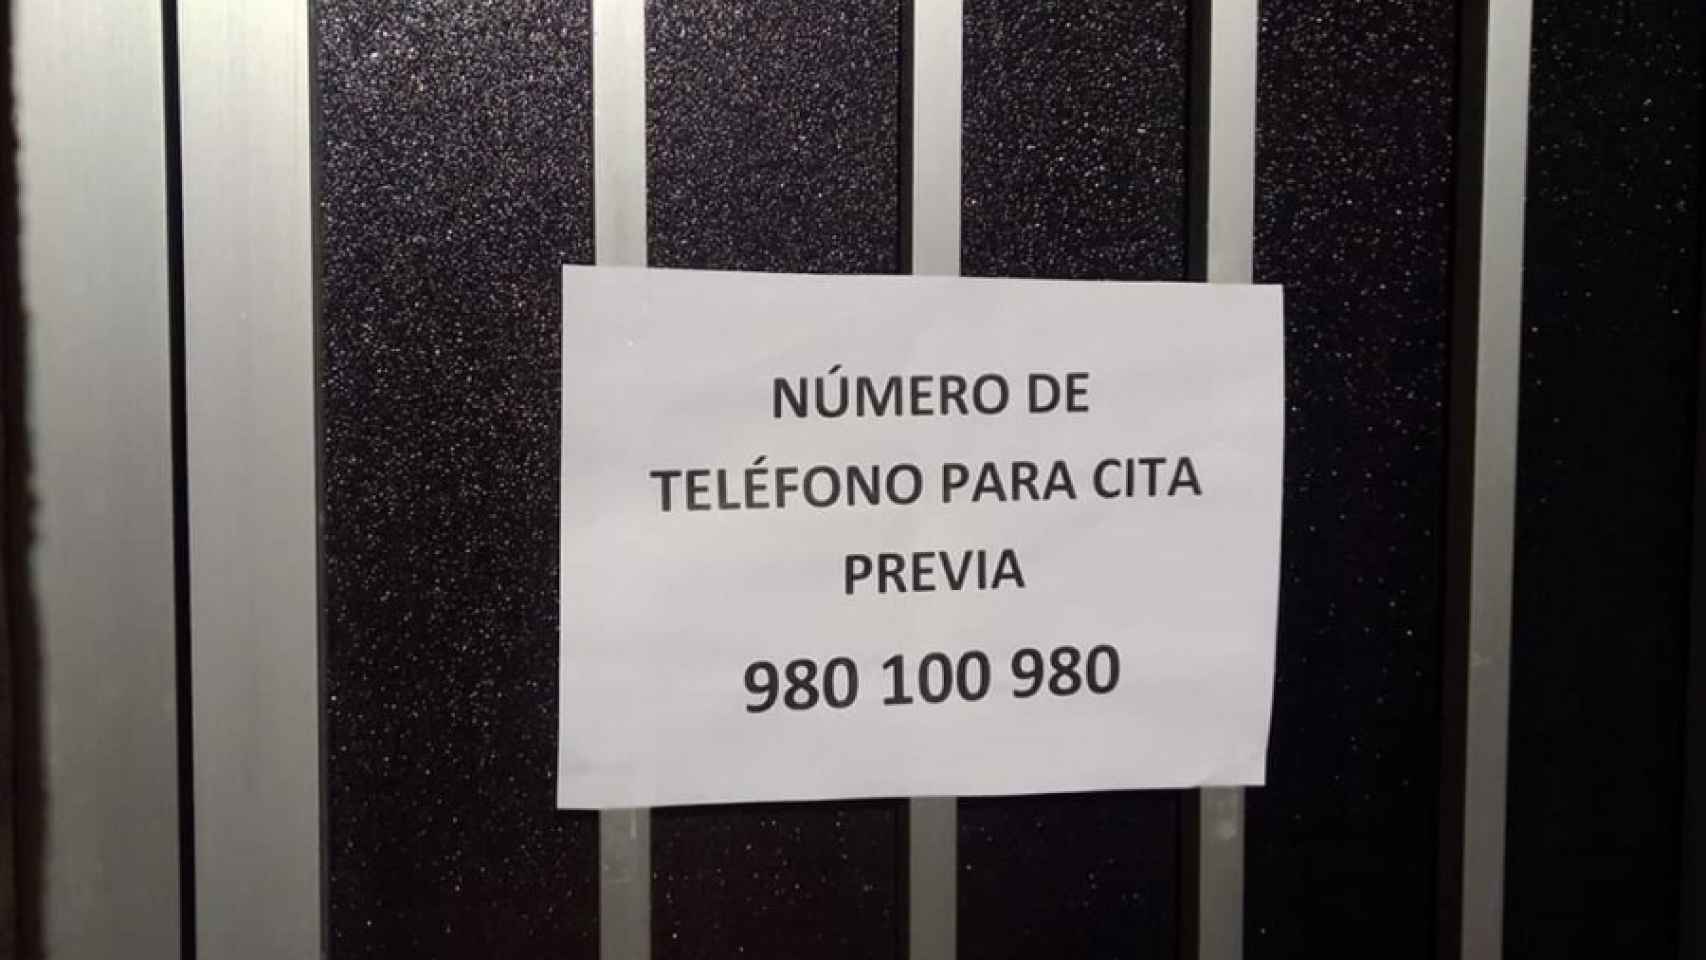 Teléfono de citas en Zamora